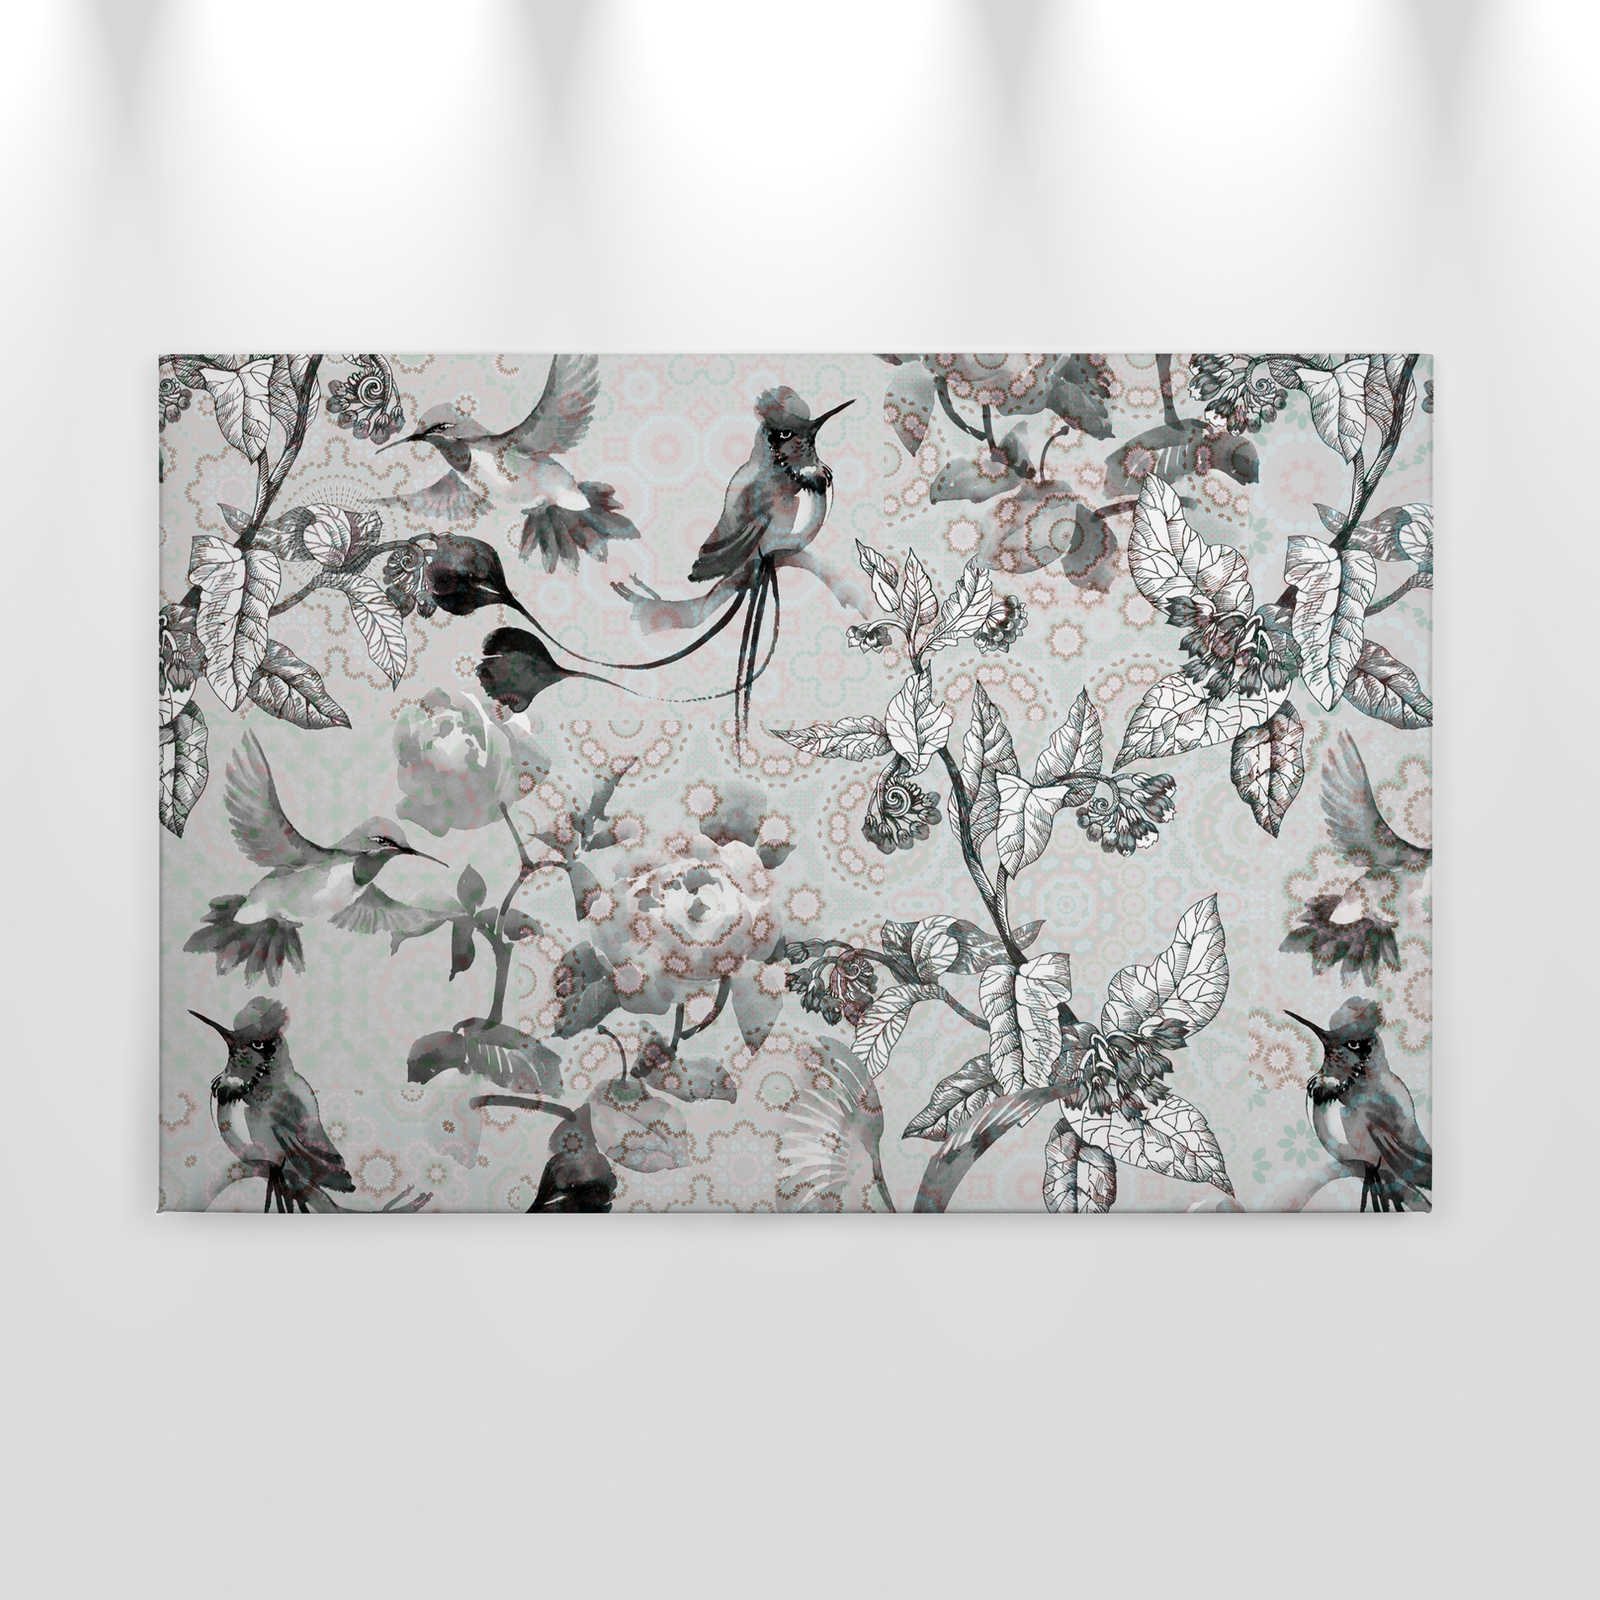             Canvas schilderij Nature Design in collagestijl | exotisch mozaïek 4 - 0,90 m x 0,60 m
        